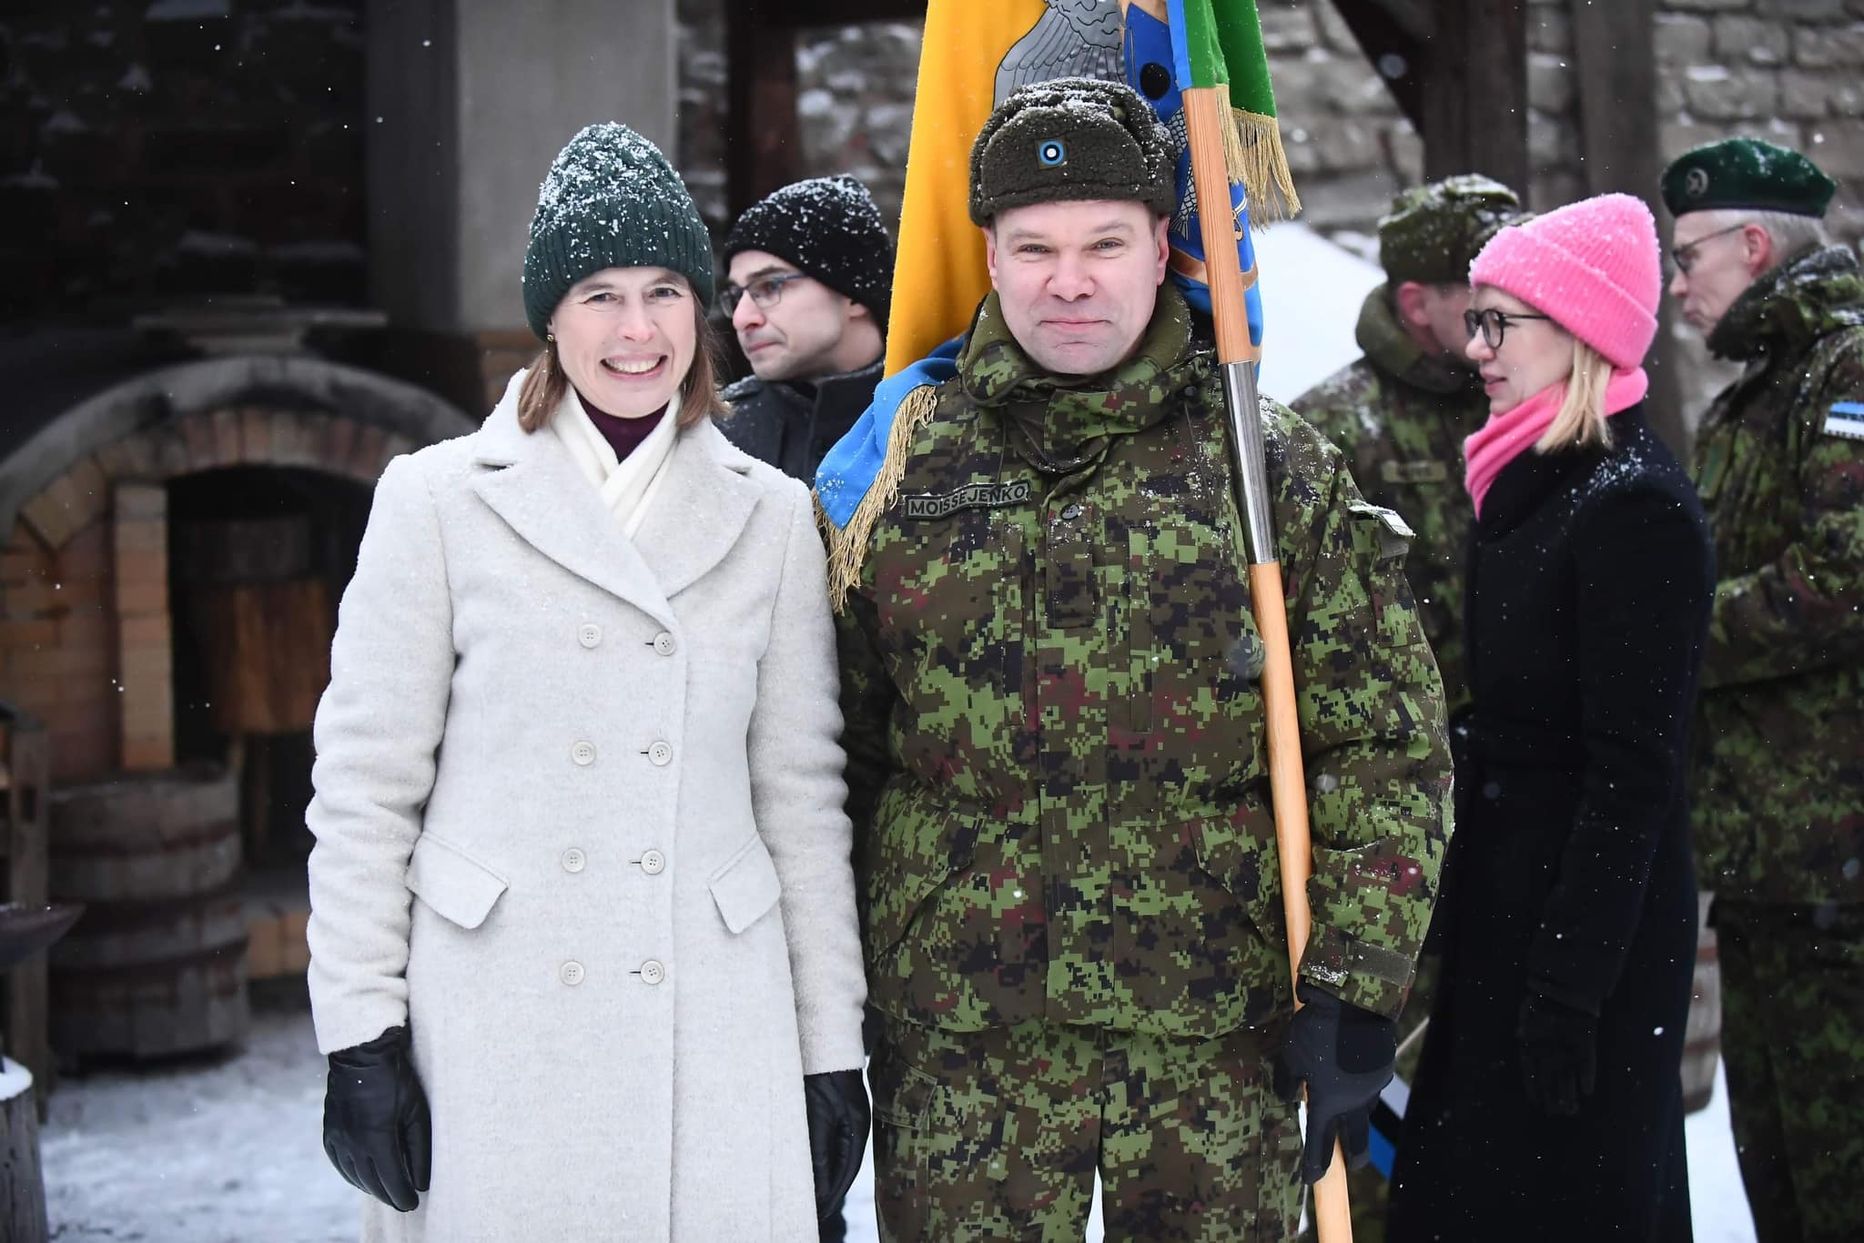 Aleksandr Moissejenko sai tänavu 24. veebruaril Eesti sünnipäeva hommikul Narva linnuses toimunud Eesti lipu heiskamise tseremoonial ühele pildile koos president Kersti Kaljulaidiga.